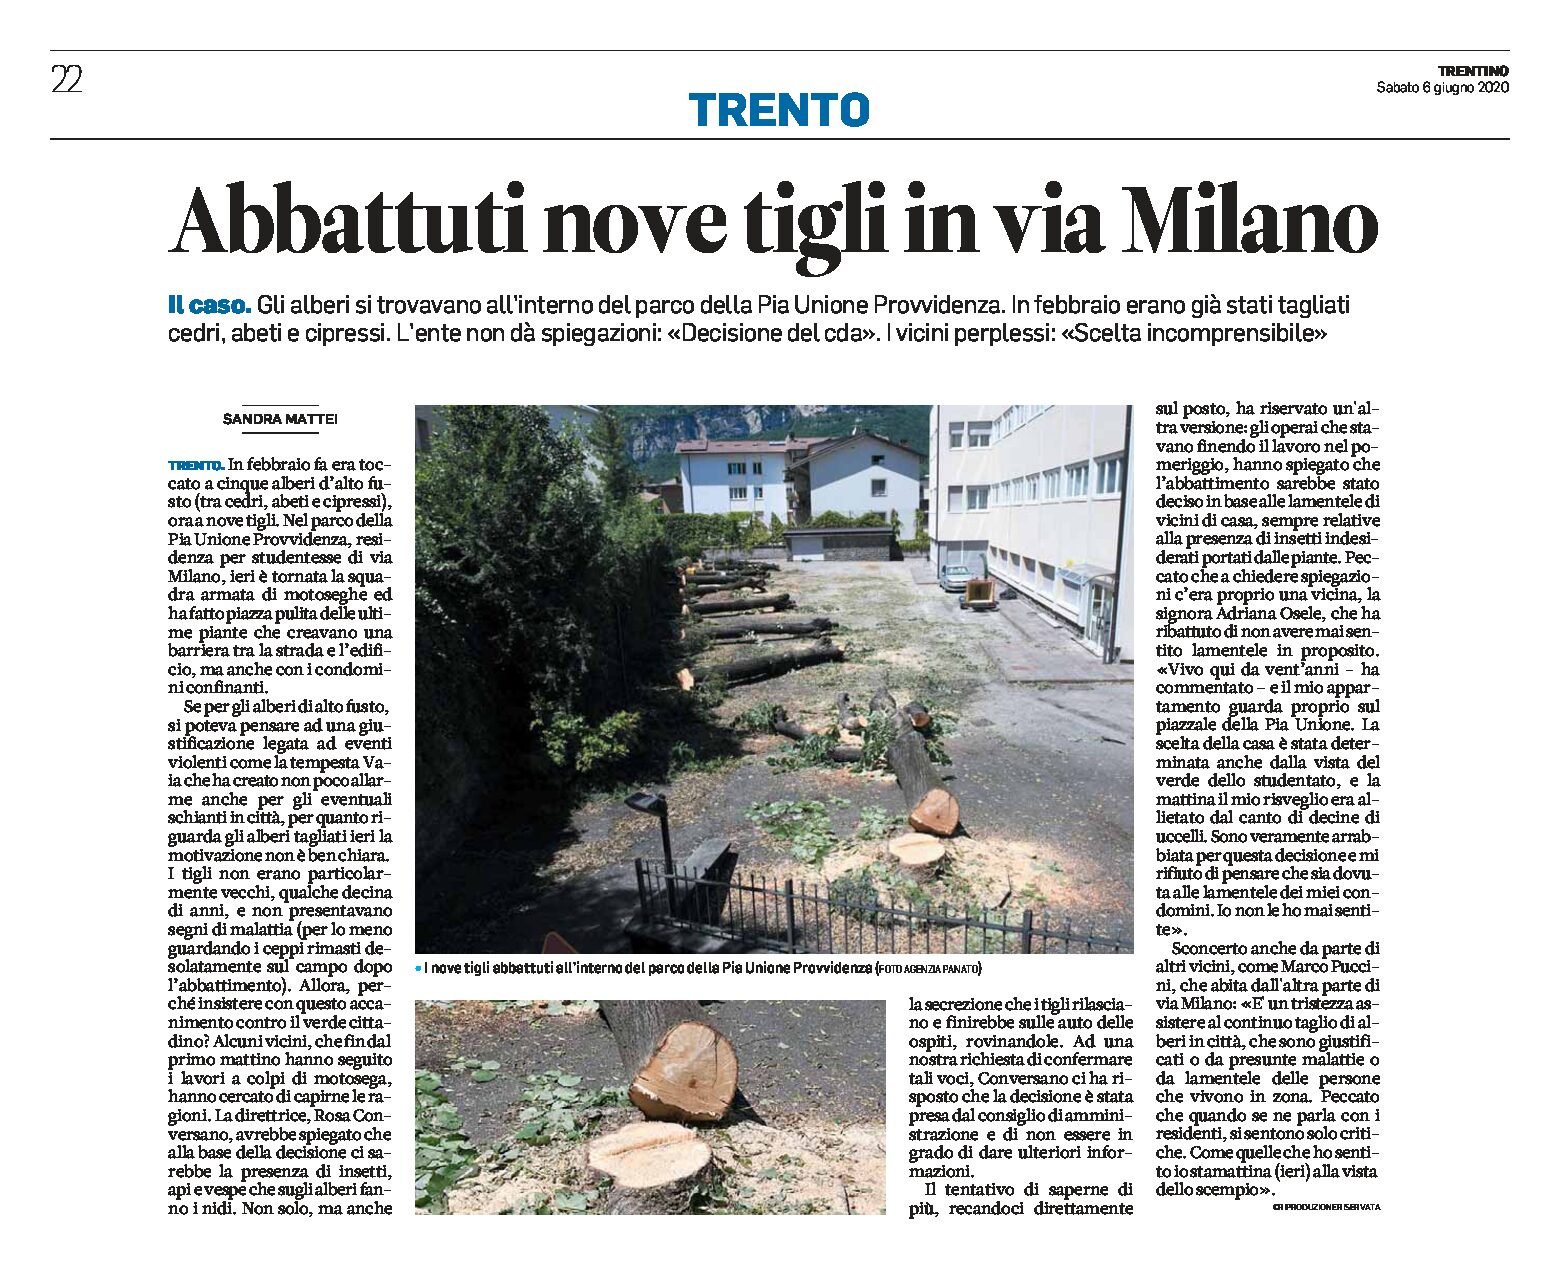 Trento, via Milano: abbattuti nove tigli